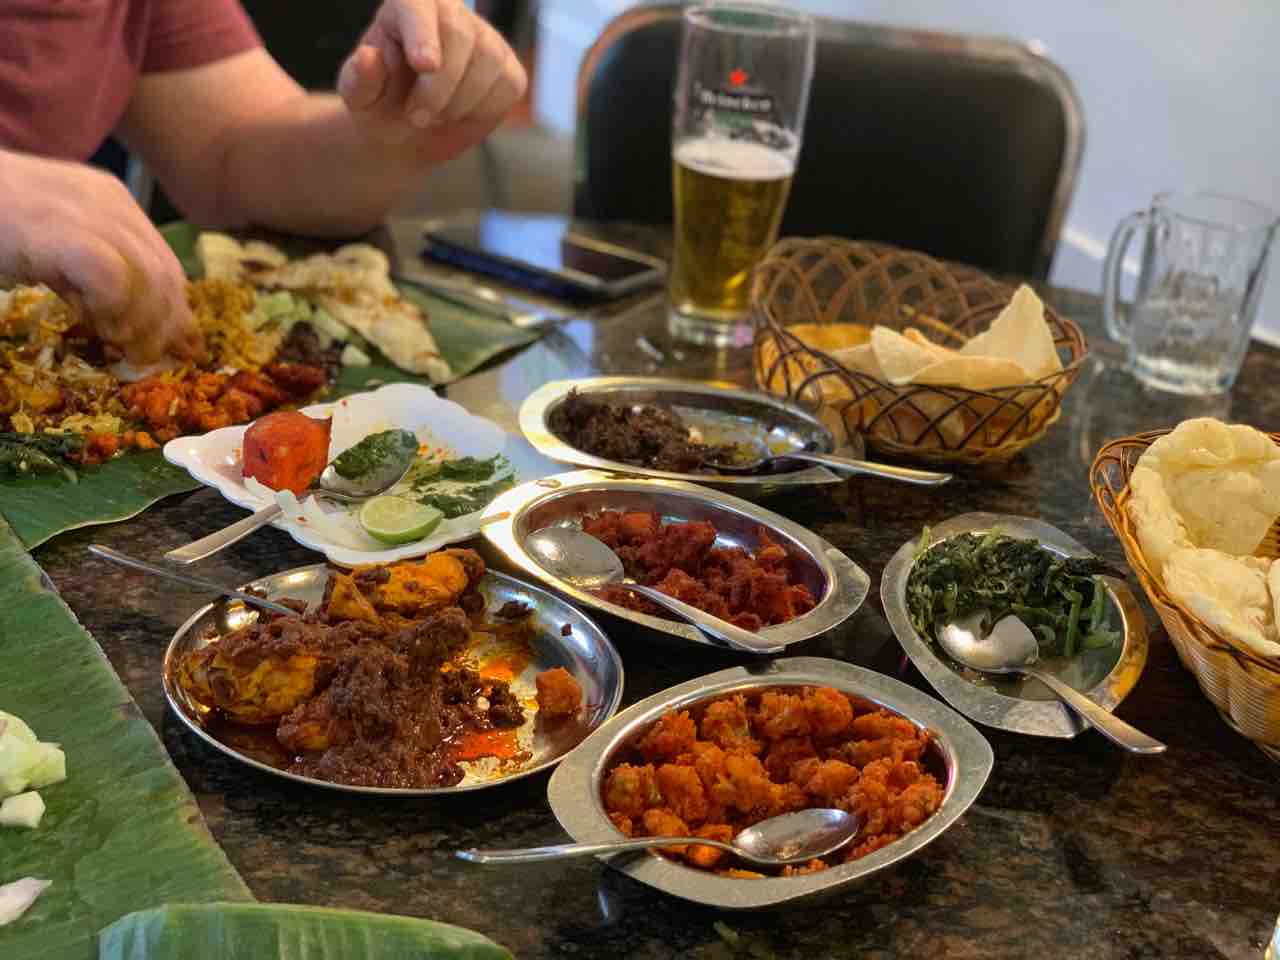 シンガポールで1番美味しいインド料理【Samy's Curry】@デンプシーヒル